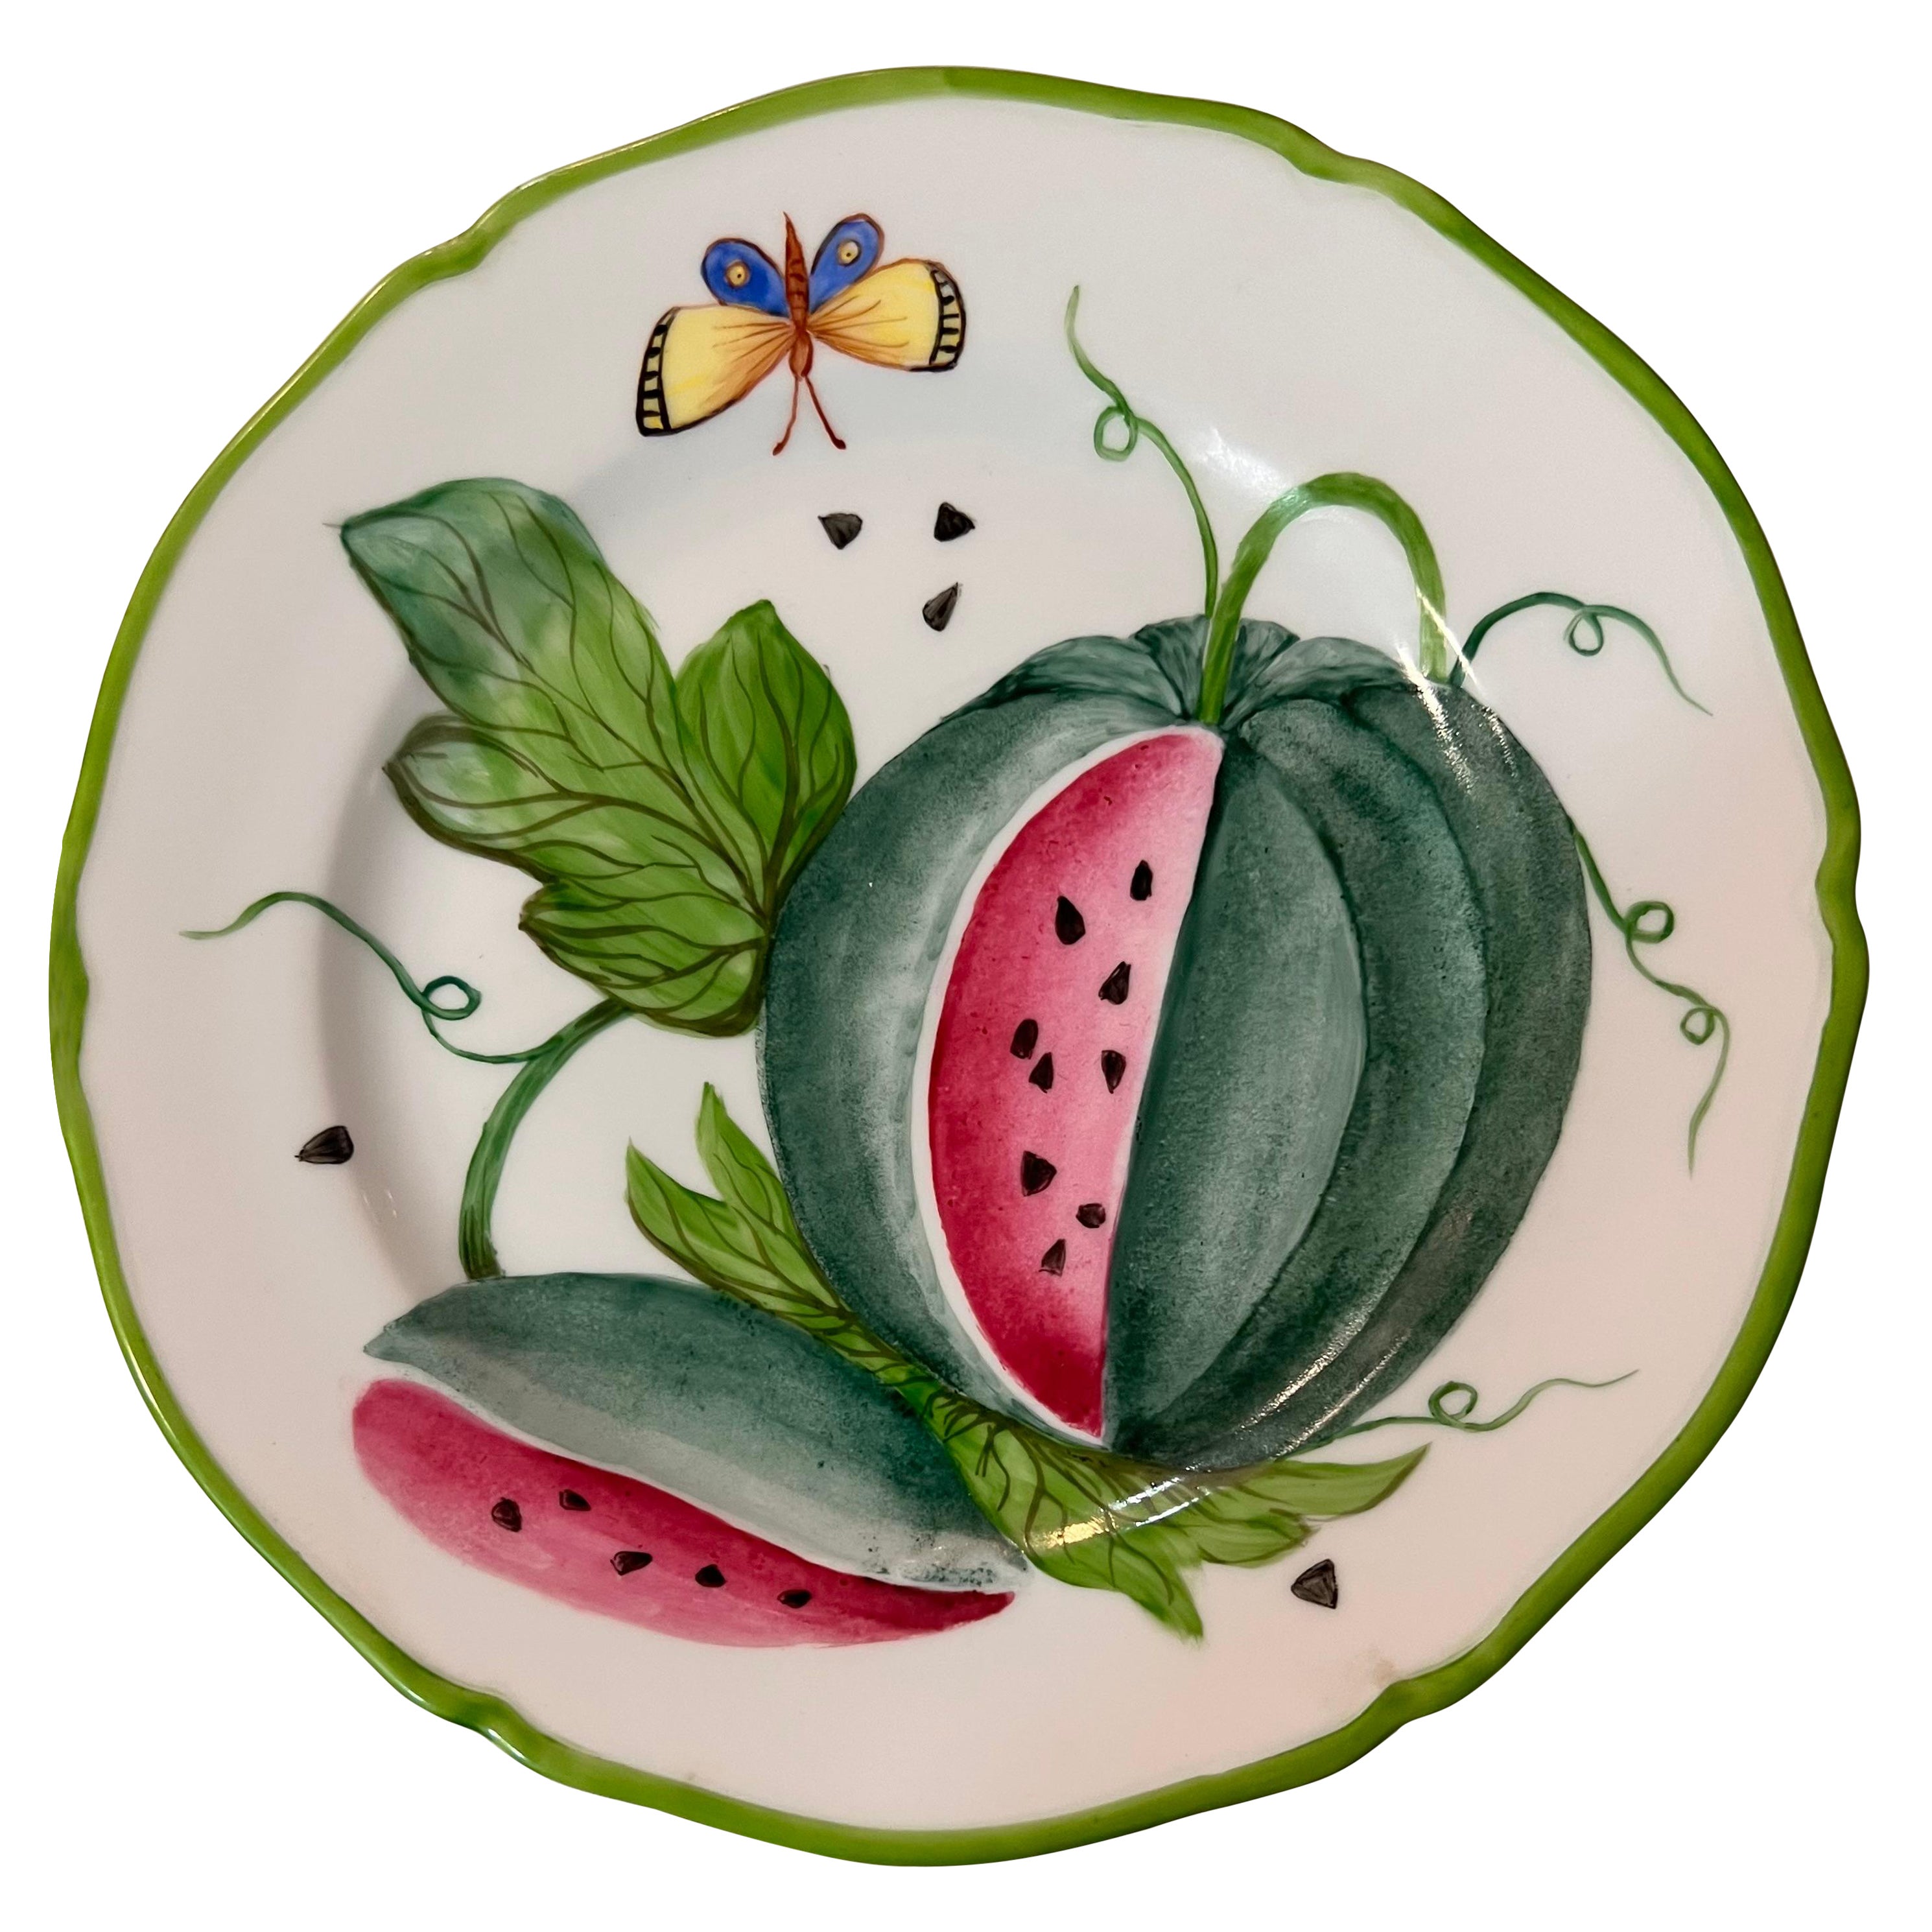 Obst-Salatteller entworfen von Giovanna Amoruso Manzari für Limoges, Frankreich